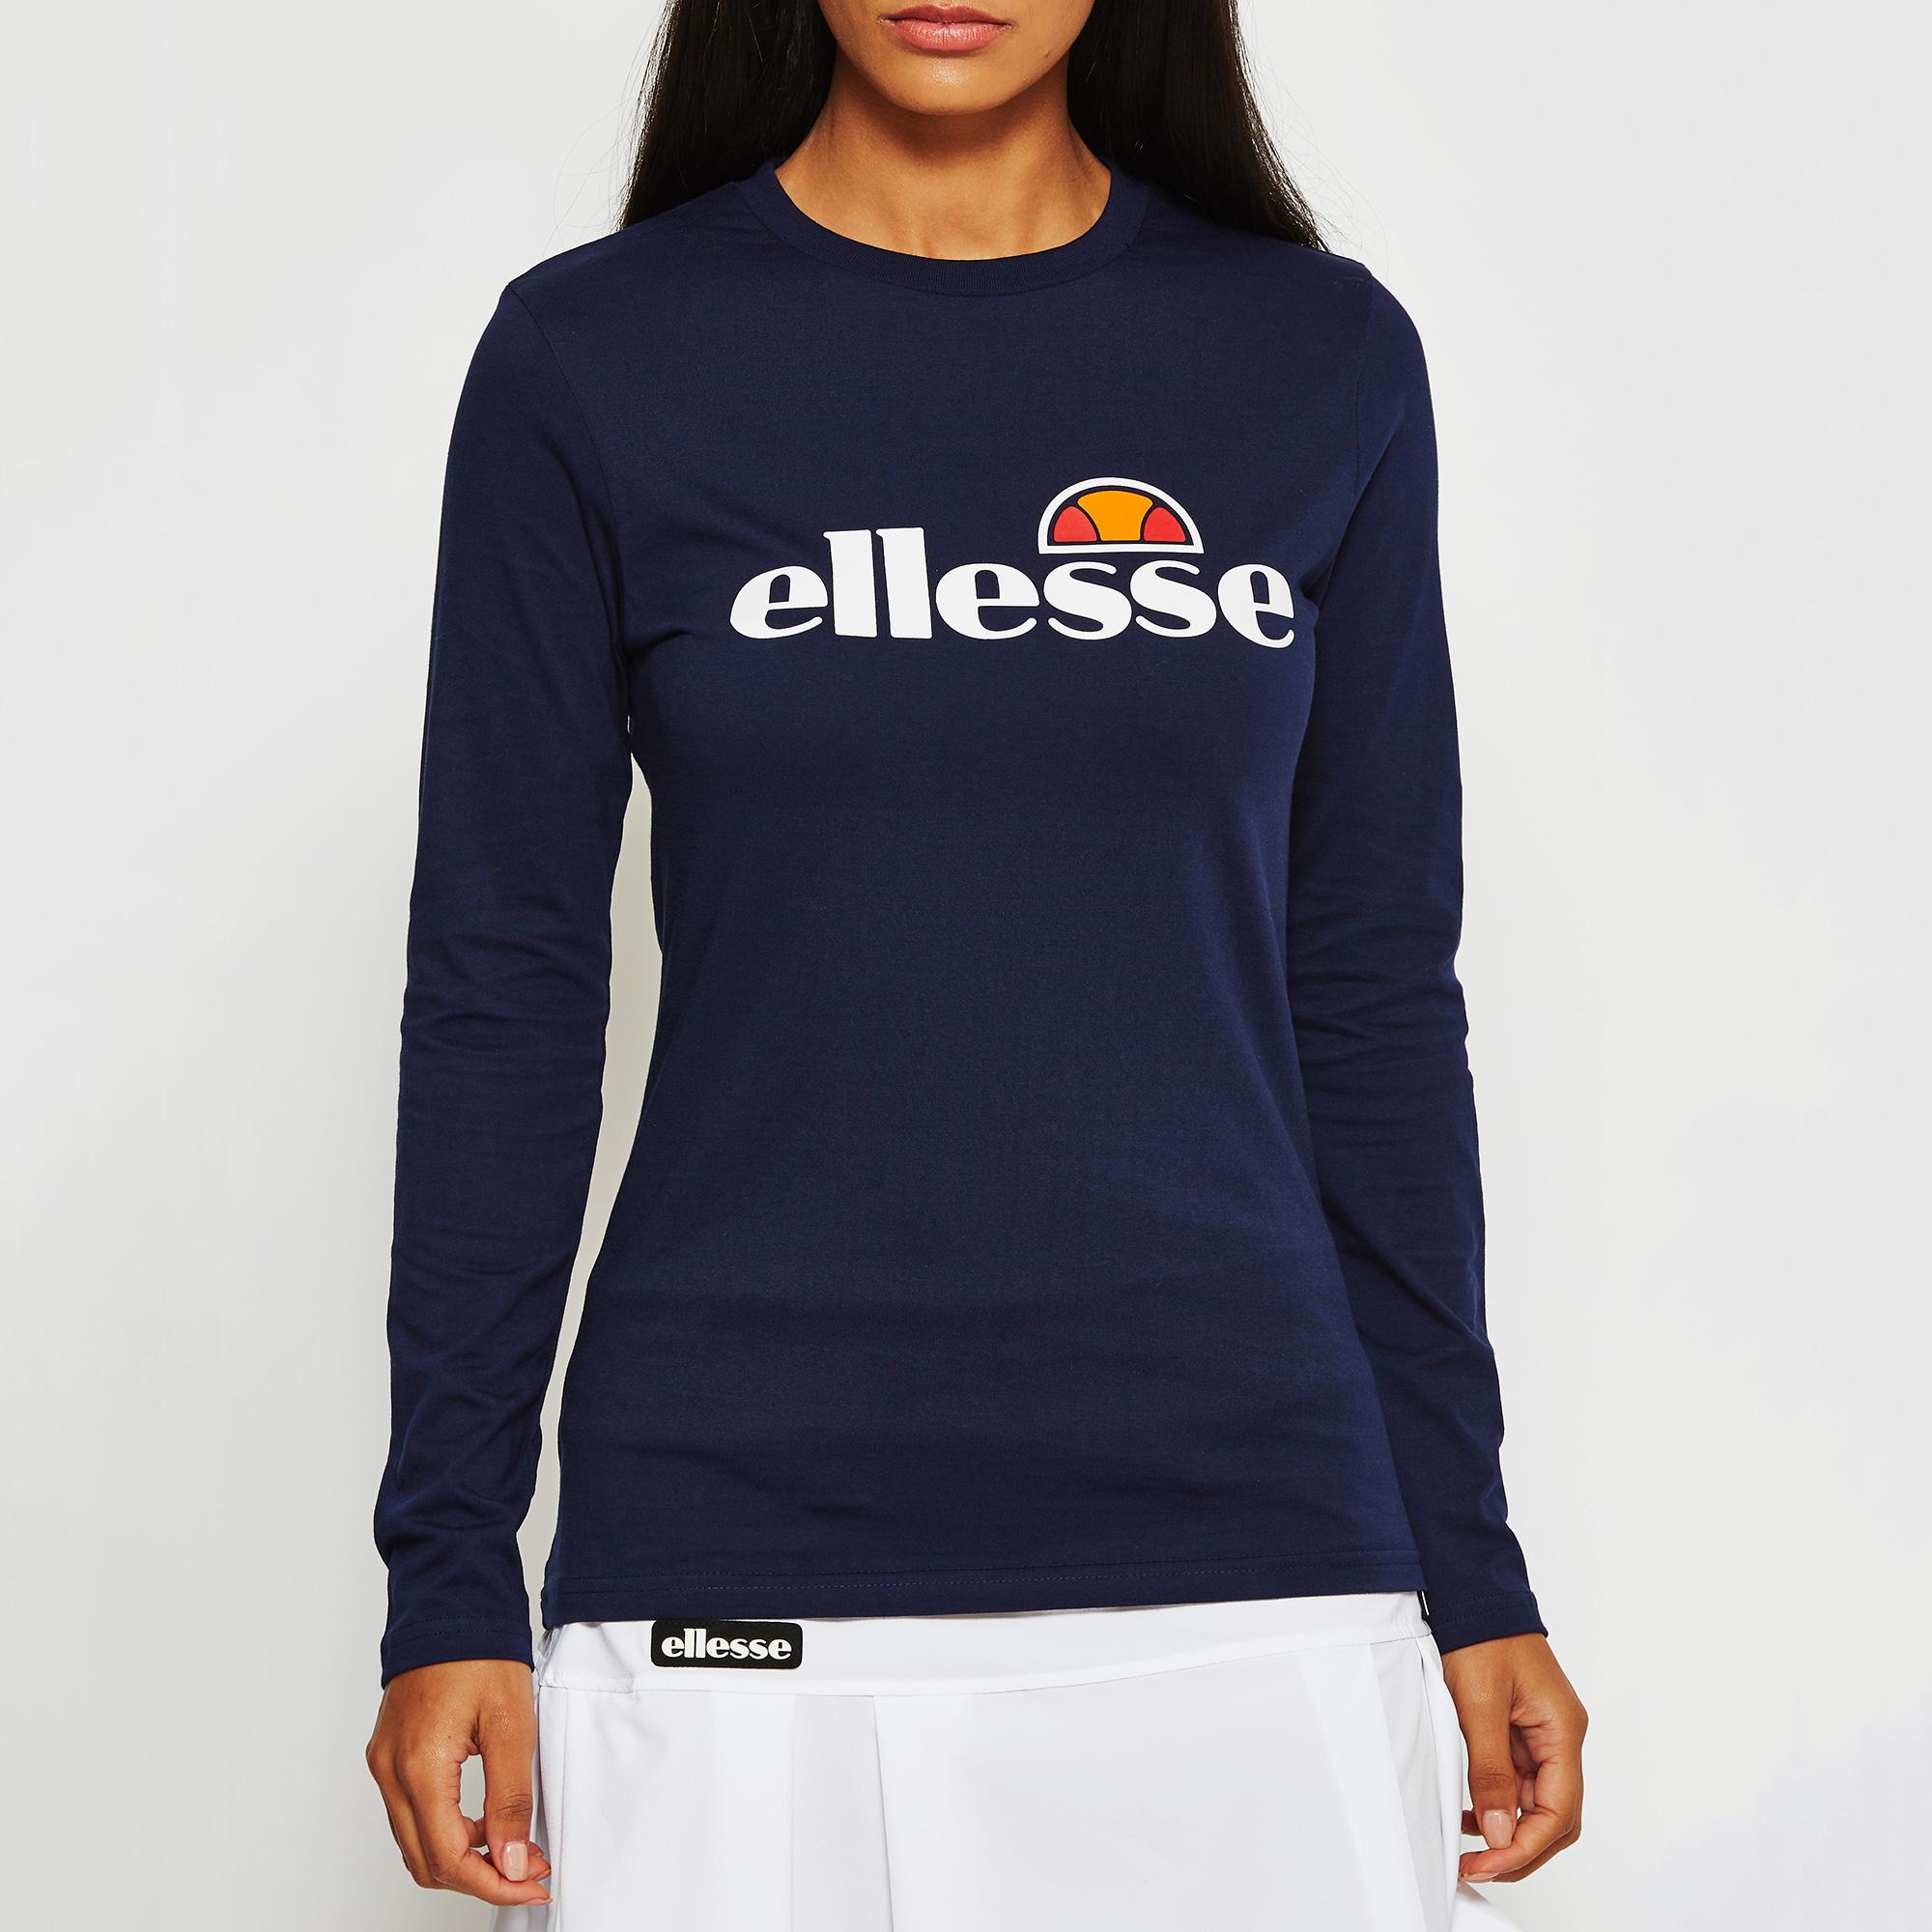 Ellesse Womens Corca Long Sleeve Top - Peacoat Navy - Tennisnuts.com